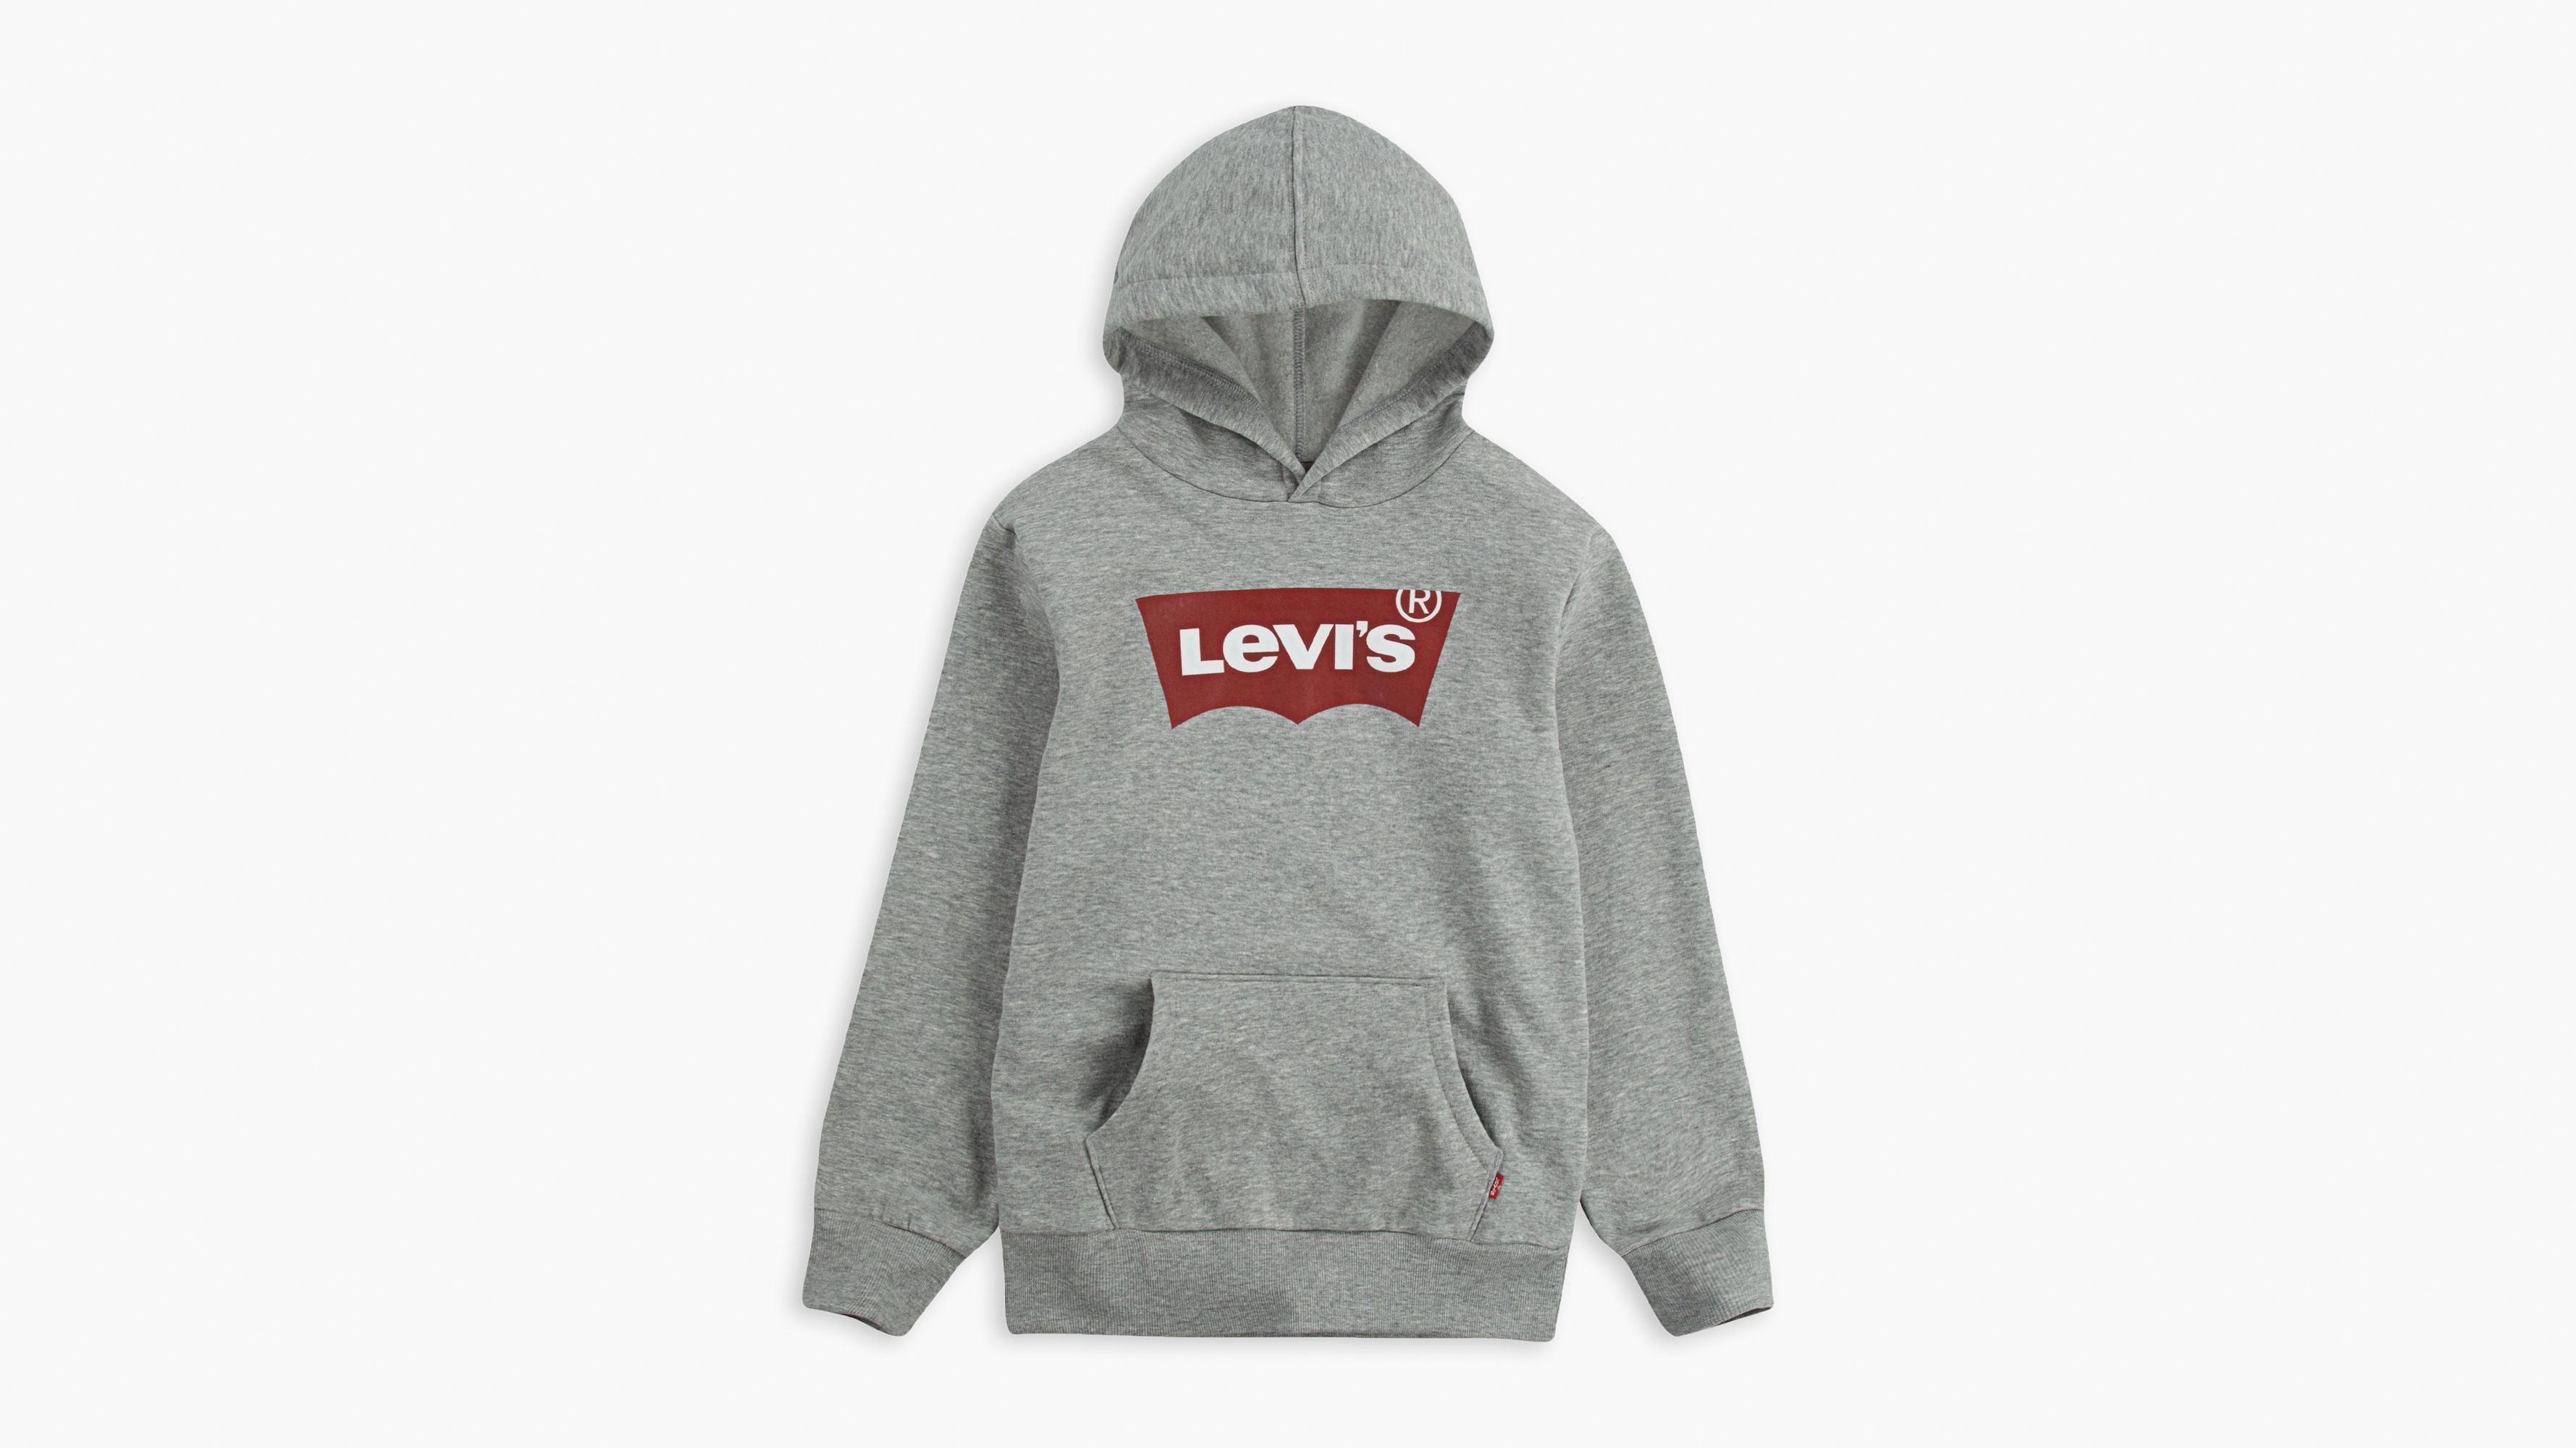 levi's skinny overalls black